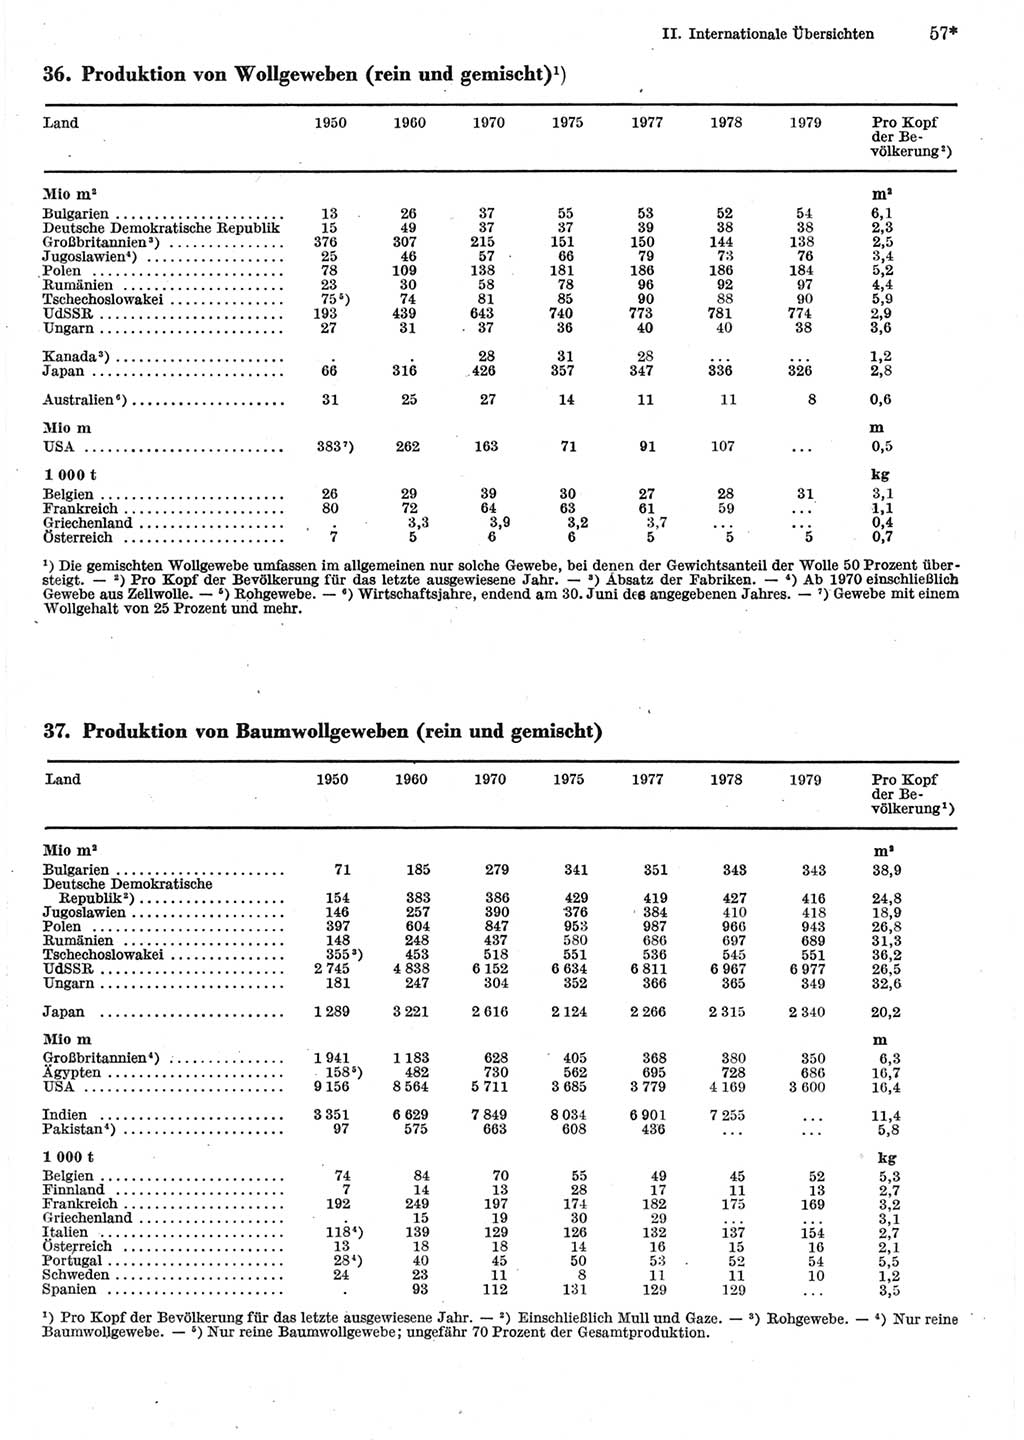 Statistisches Jahrbuch der Deutschen Demokratischen Republik (DDR) 1981, Seite 57 (Stat. Jb. DDR 1981, S. 57)